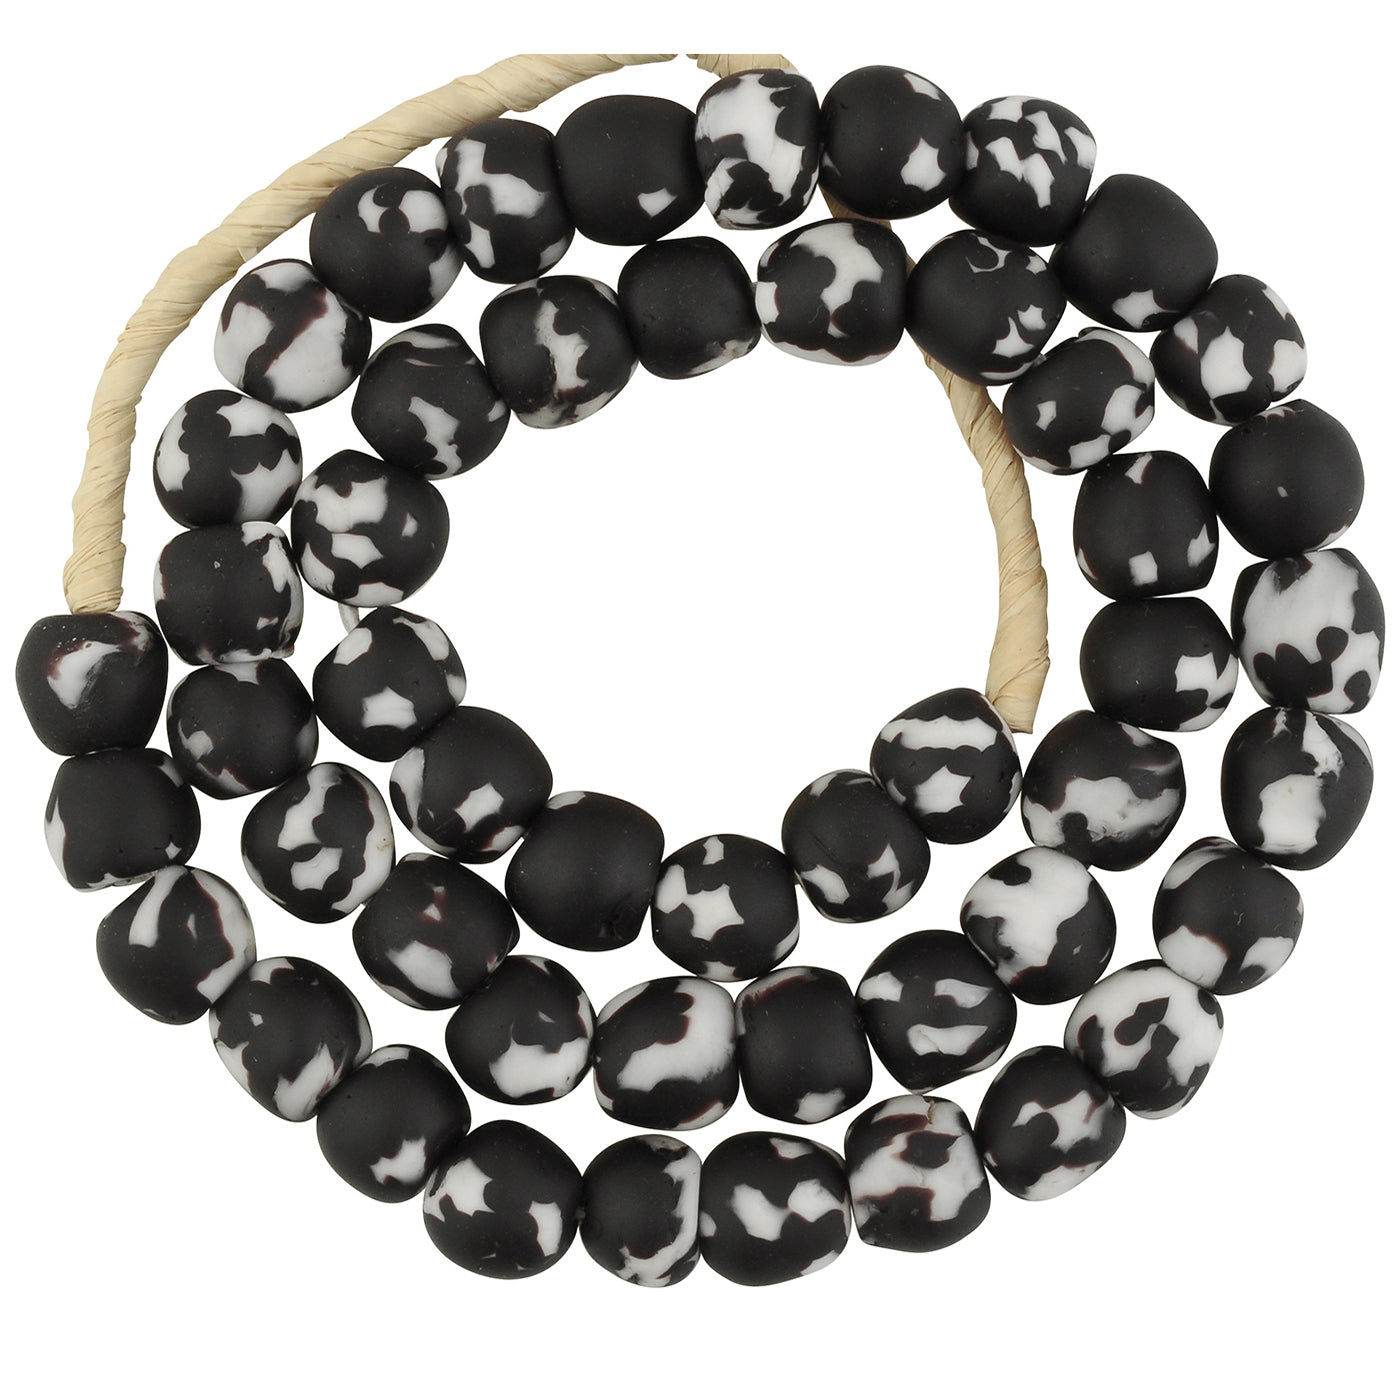 Handmade Recycled Glass Beaded Bracelet in Black and White - Black